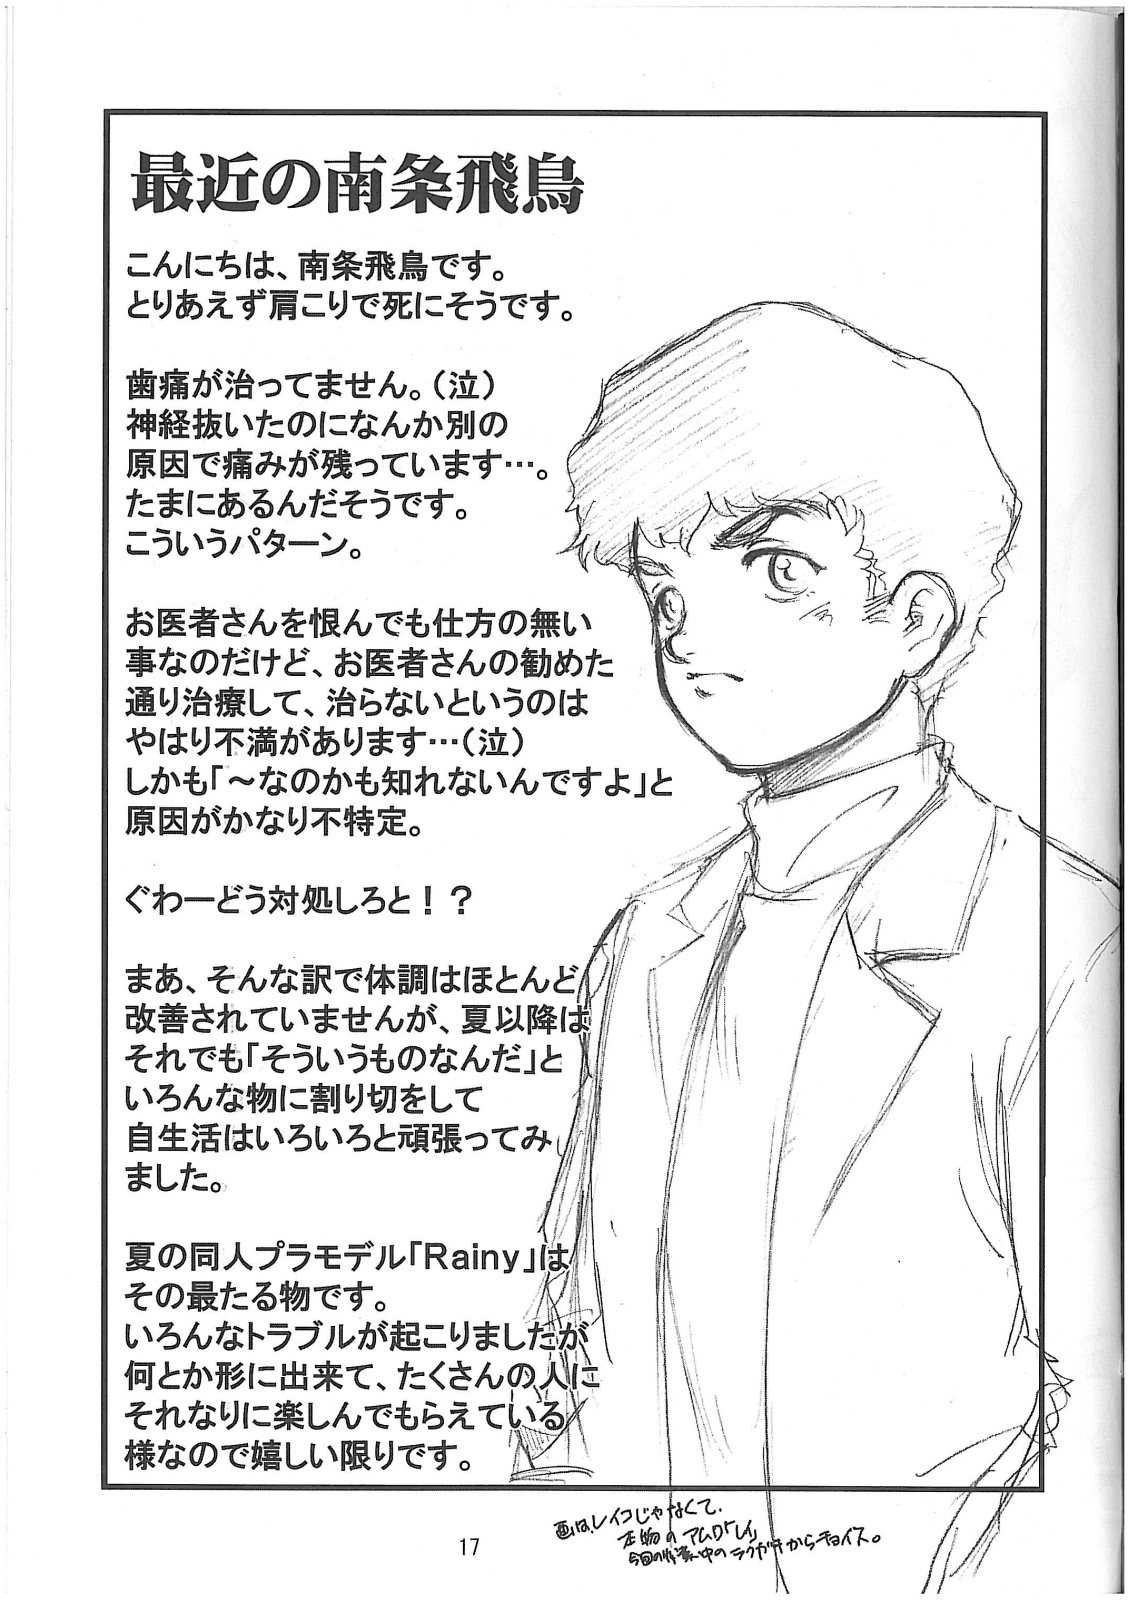 [Idenshi no fune] Reiko buigou sakusen (Gundam){masterbloodfer} 